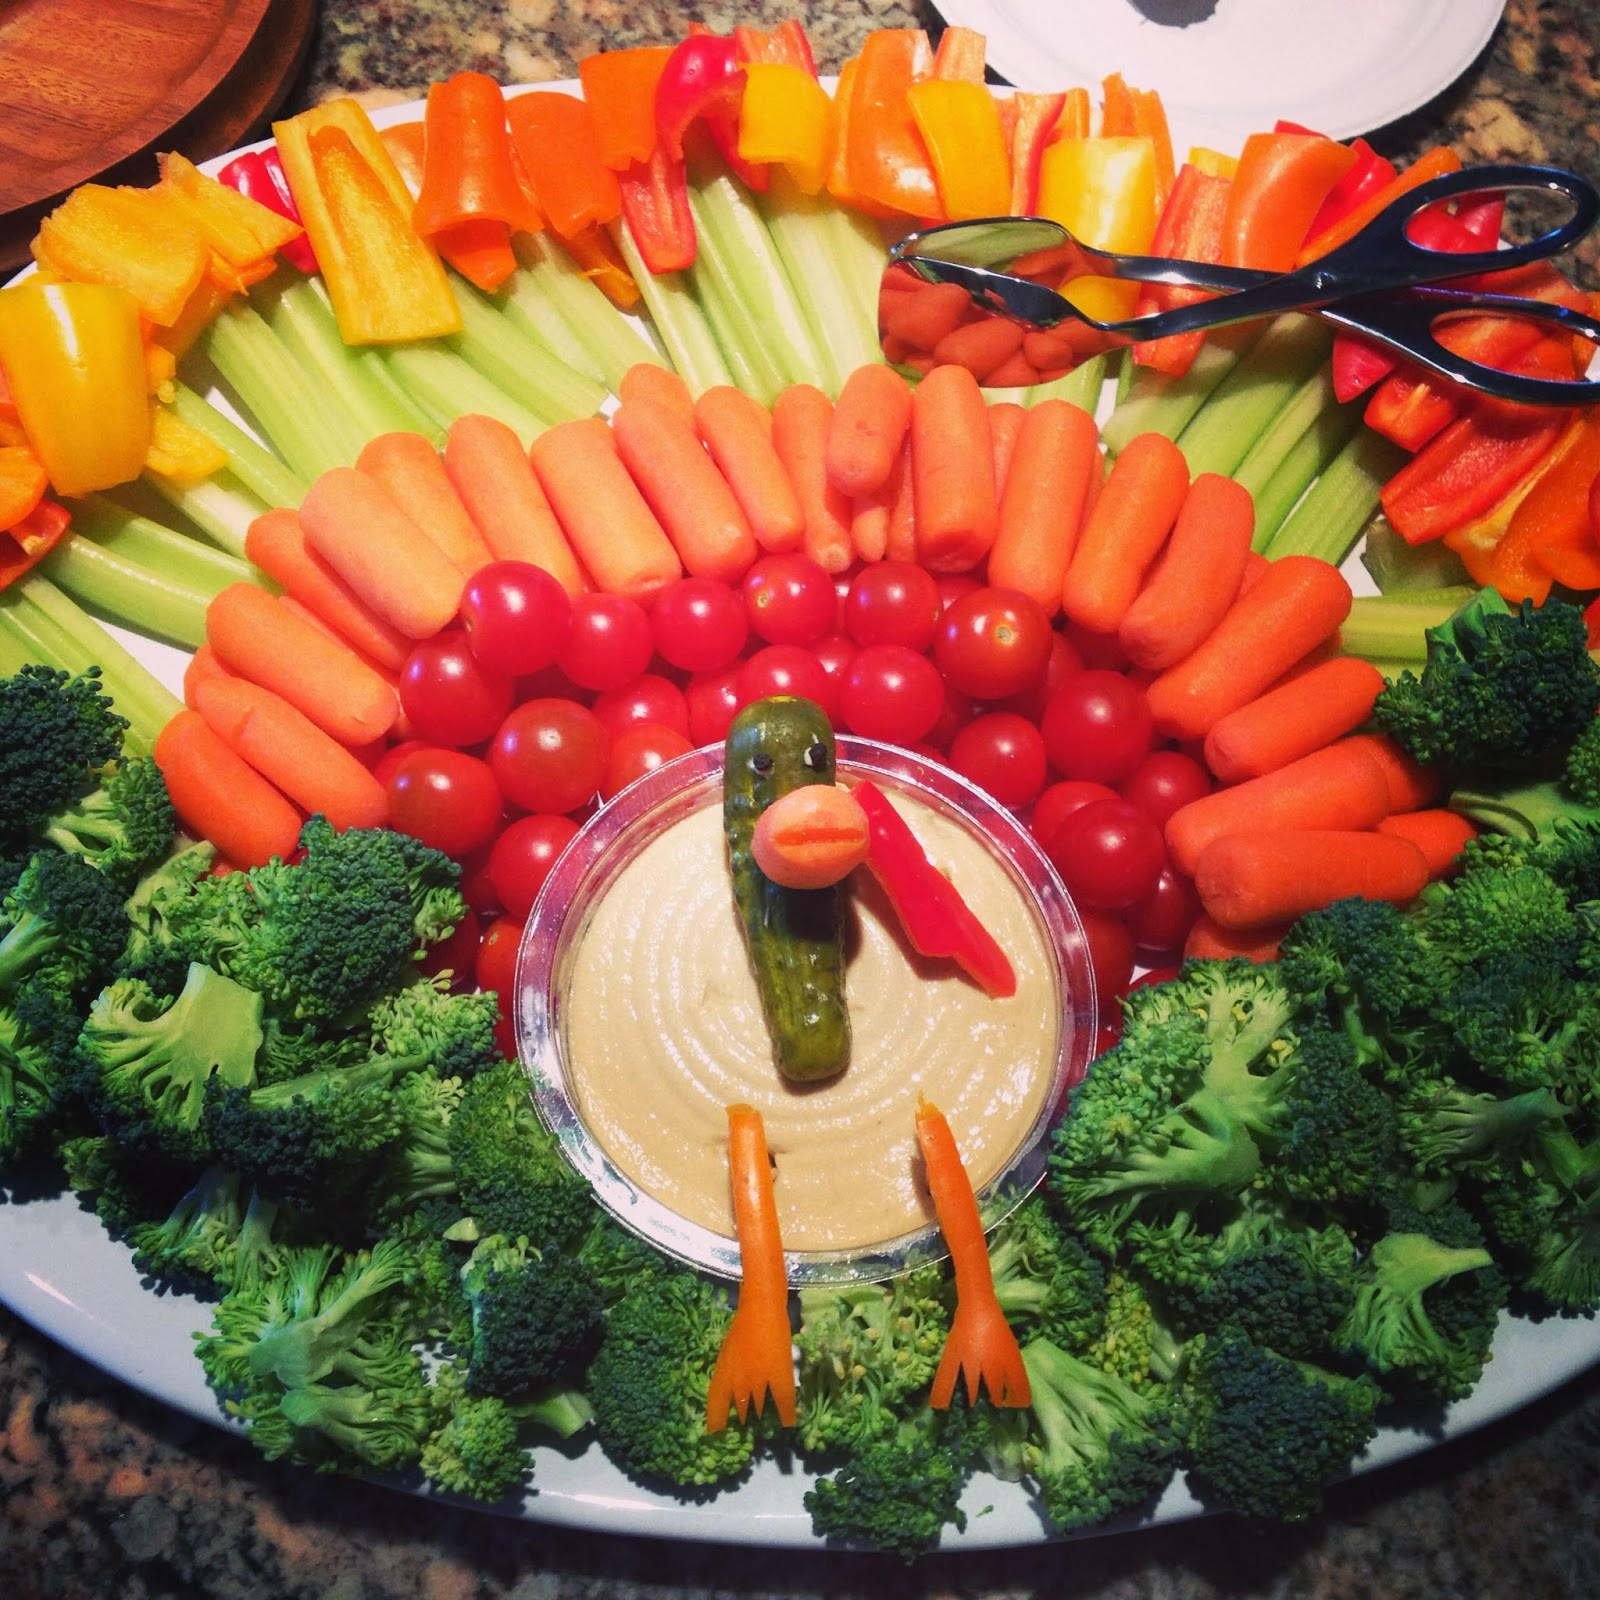 Turkey Veggie Platter For Thanksgiving
 Kinder Cakes Five for Friday 11 29 13